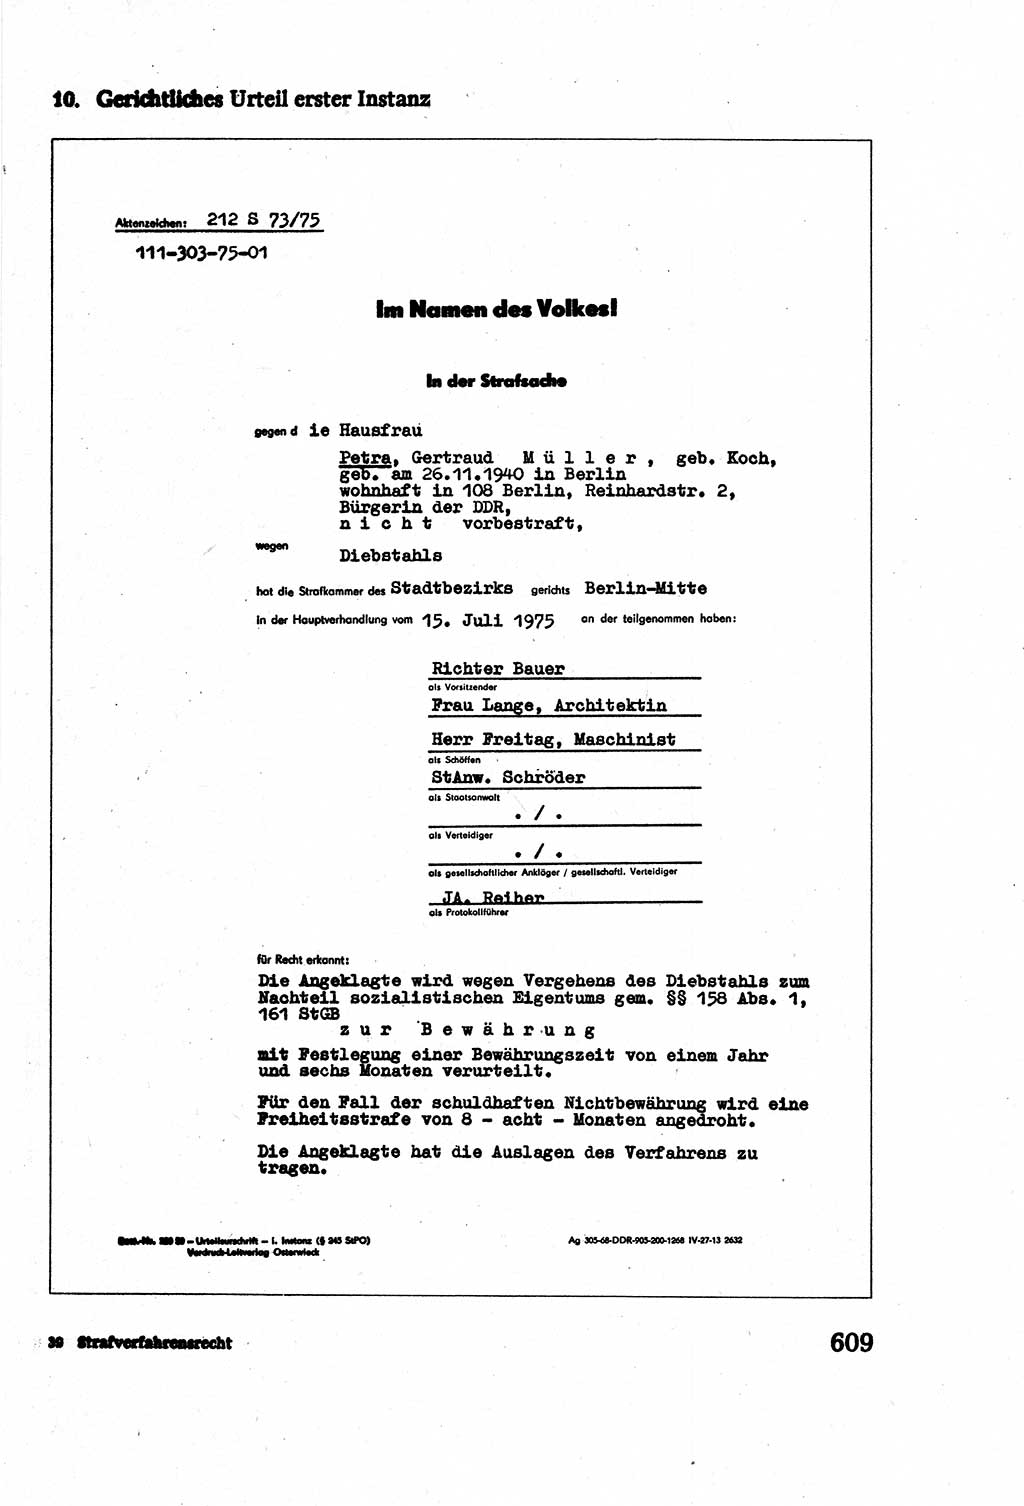 Strafverfahrensrecht [Deutsche Demokratische Republik (DDR)], Lehrbuch 1977, Seite 609 (Strafverf.-R. DDR Lb. 1977, S. 609)